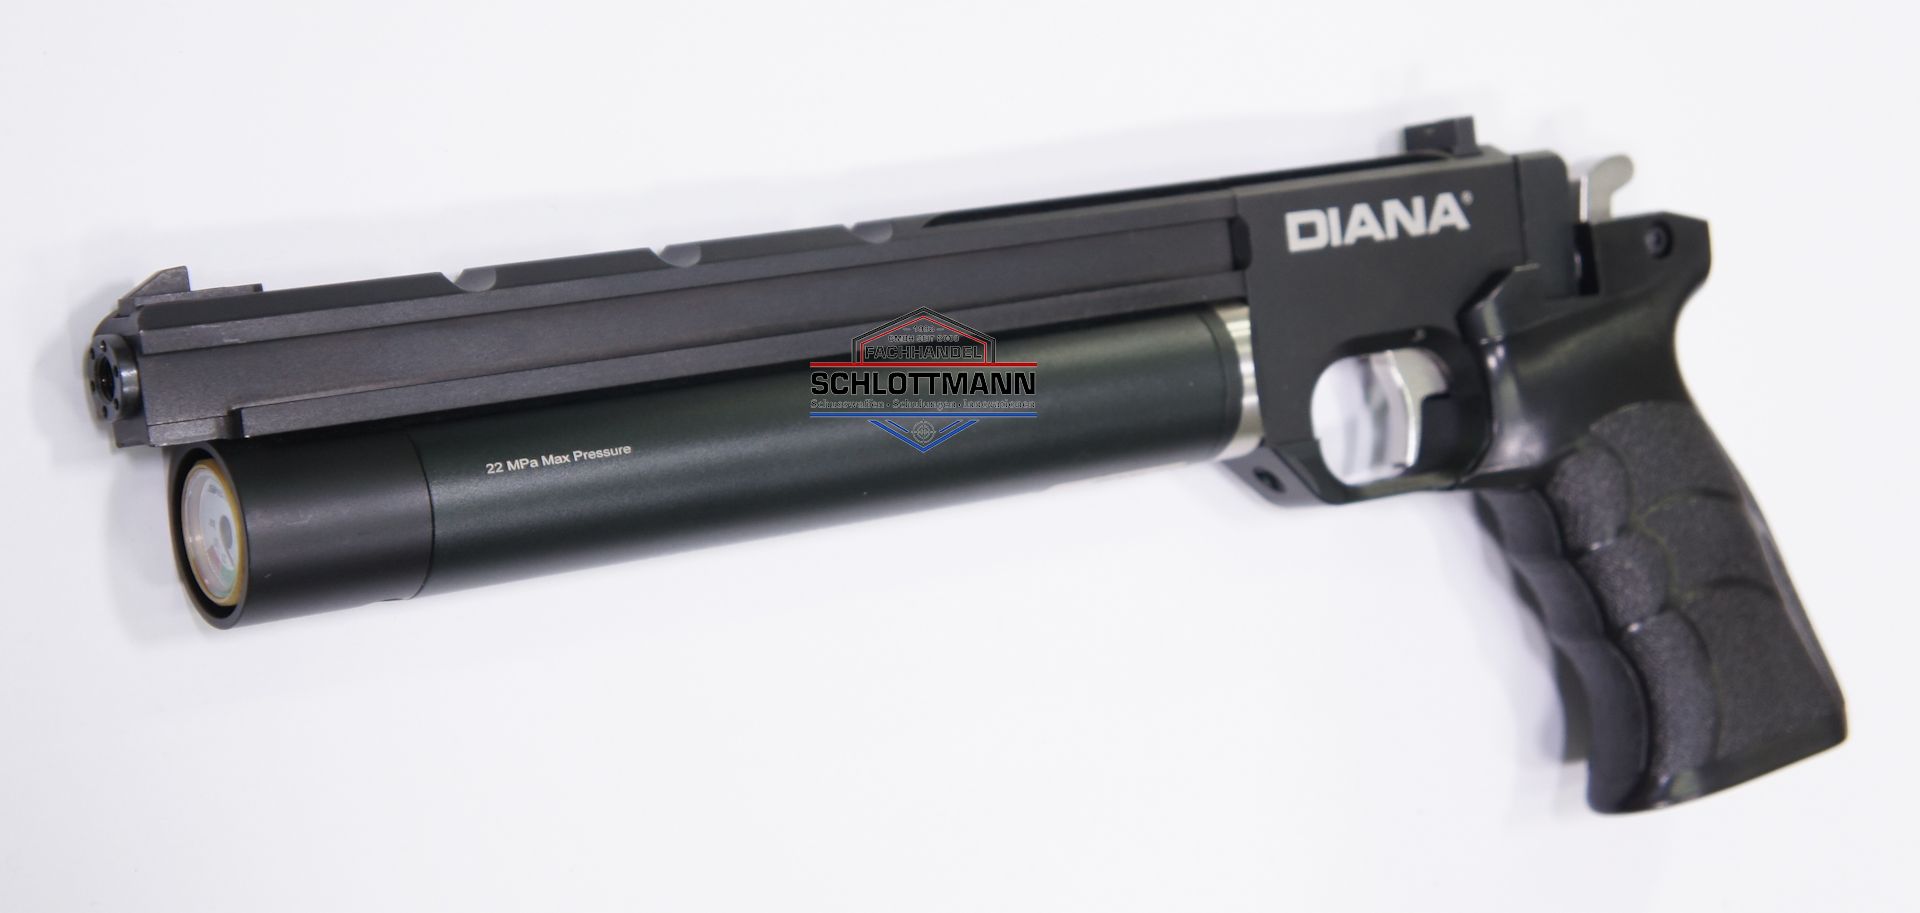 Luftpistole Artemis PP700S kommt unter dem Namen Airmax auf den deutschen Markt, Kaliber 4,5